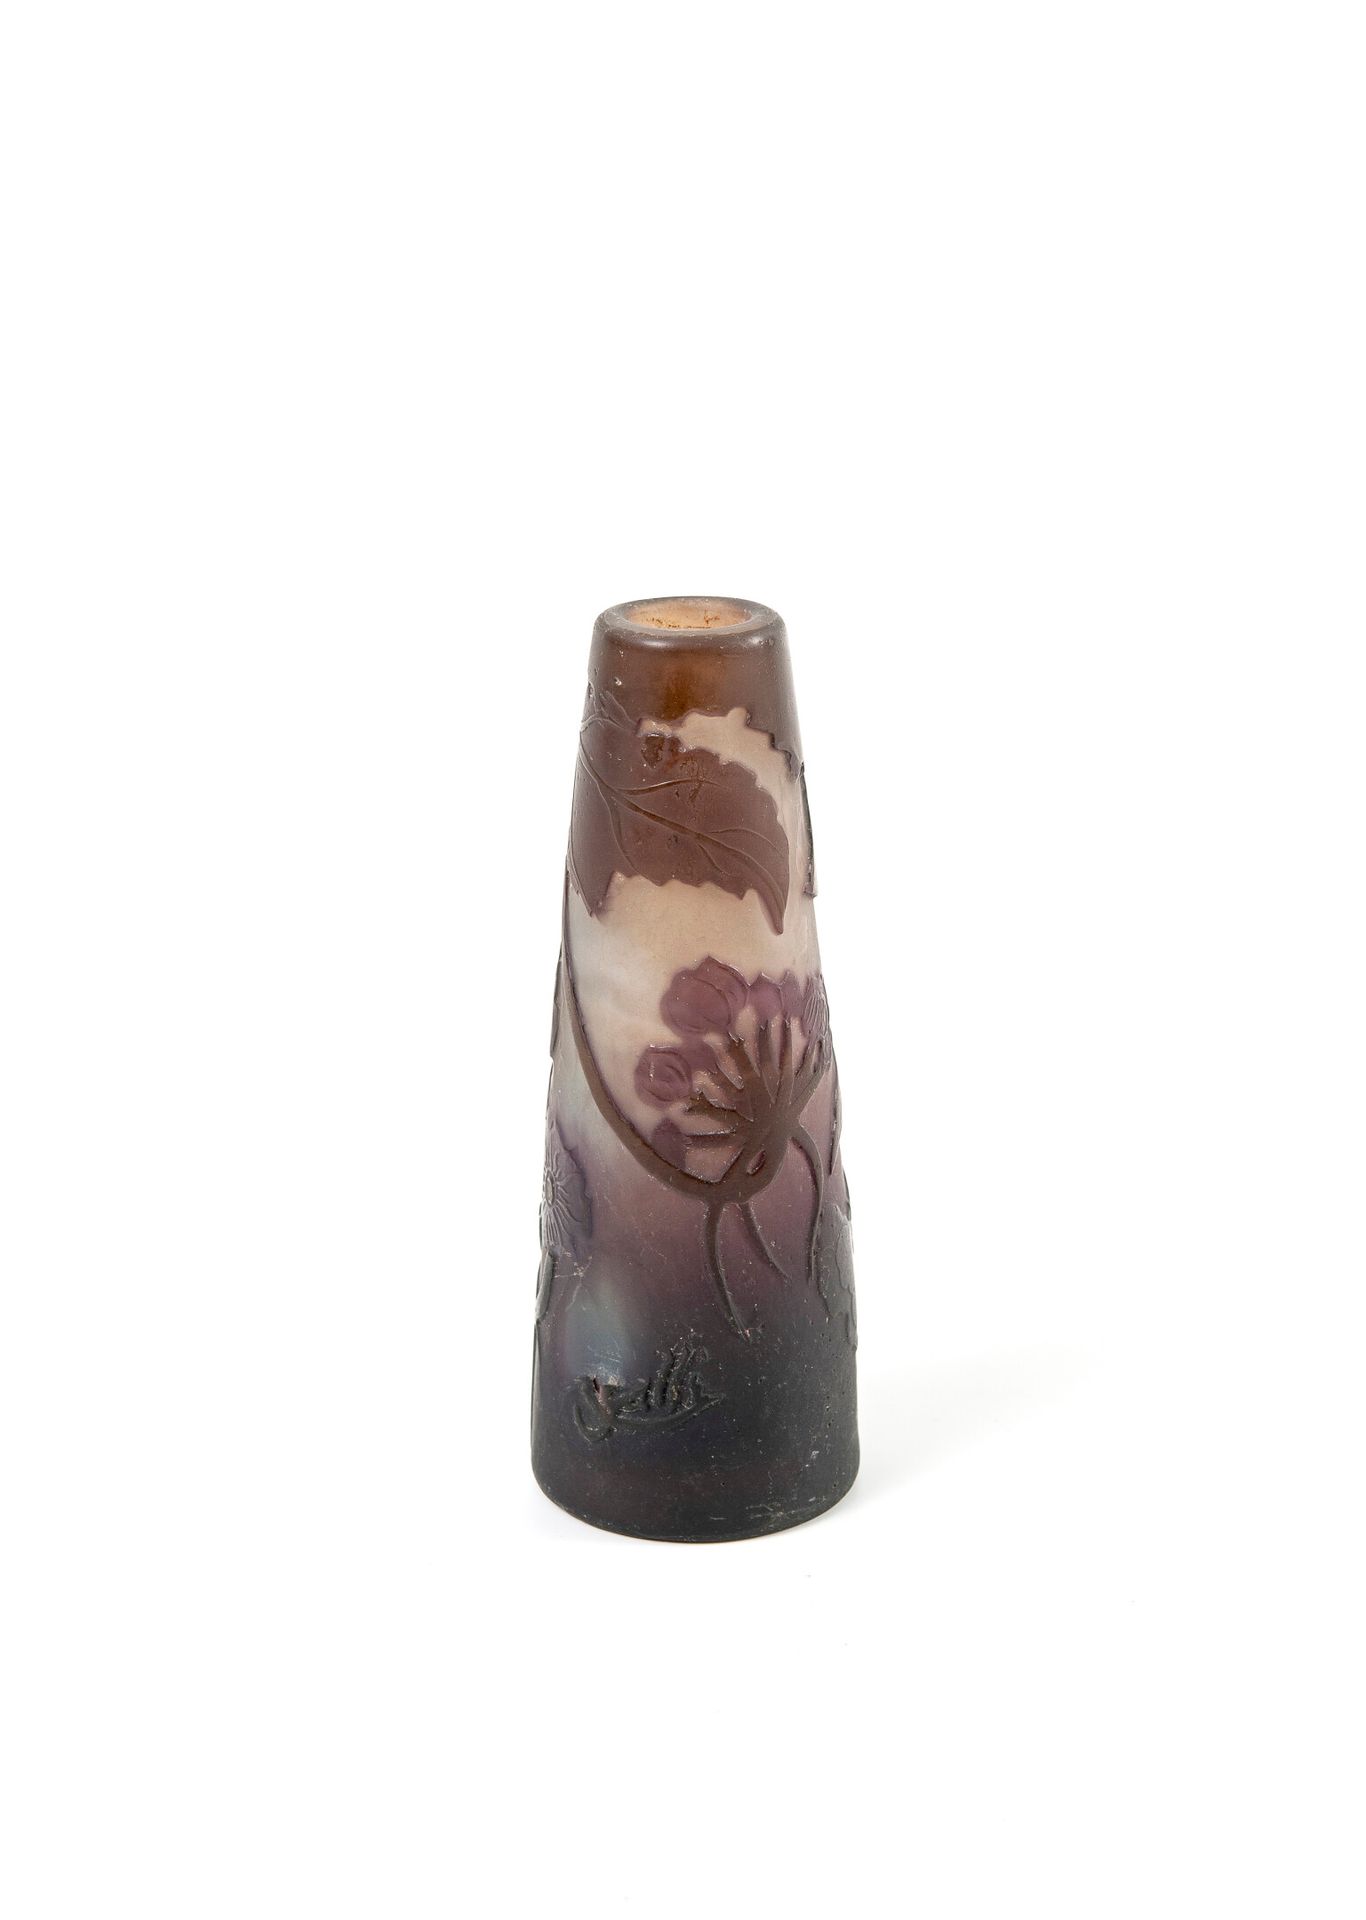 ÉTABLISSEMENTS GALLÉ 小的截顶锥状花瓶，平底。

在白色到紫色的背景上，有棕色-卡其色和紫色的多层玻璃证明。

饰以酸蚀法的月亮浮雕。

签&hellip;